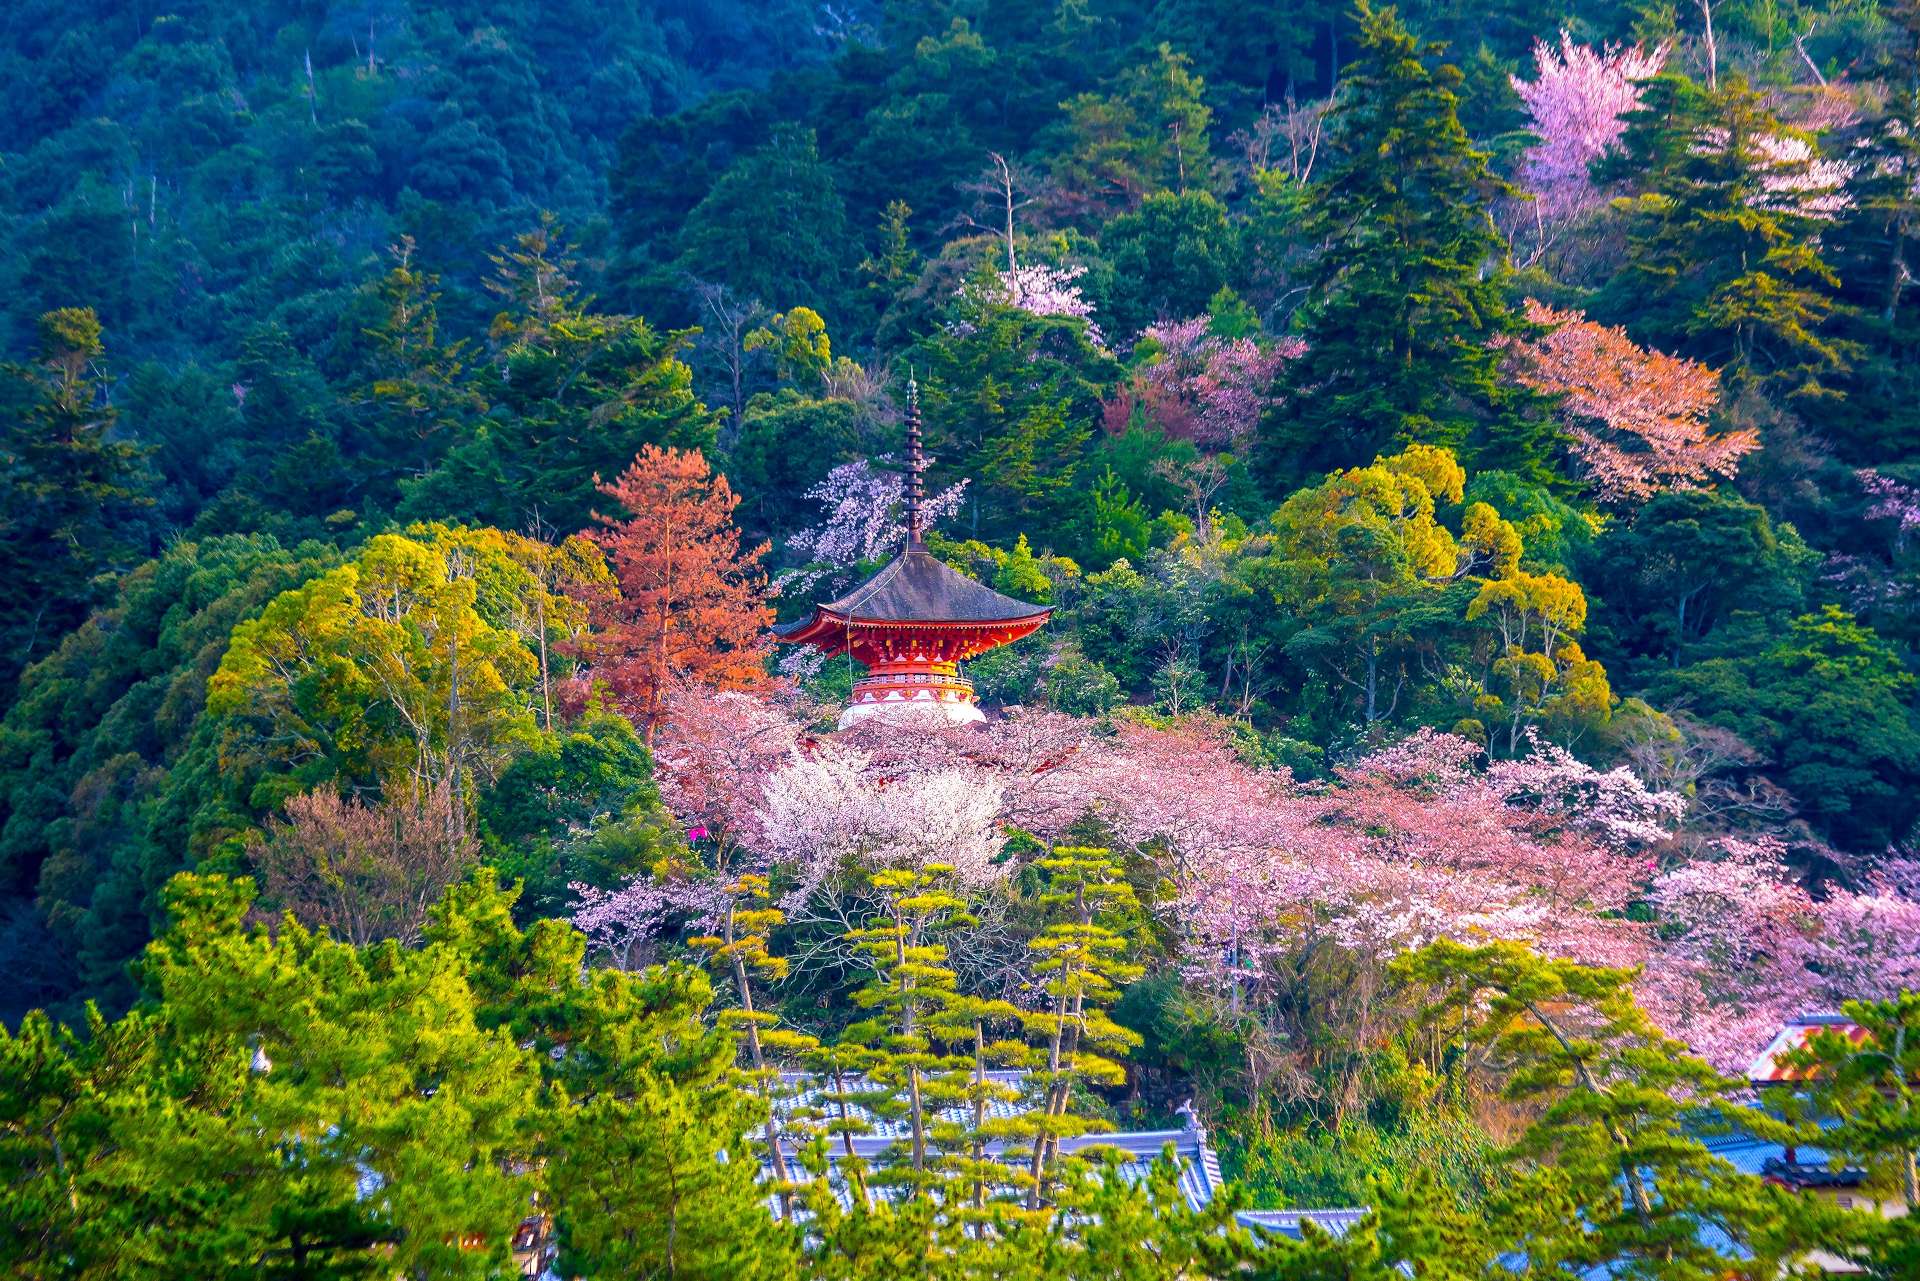 Beautiful Nature in Japan – 日本の美しい自然 –